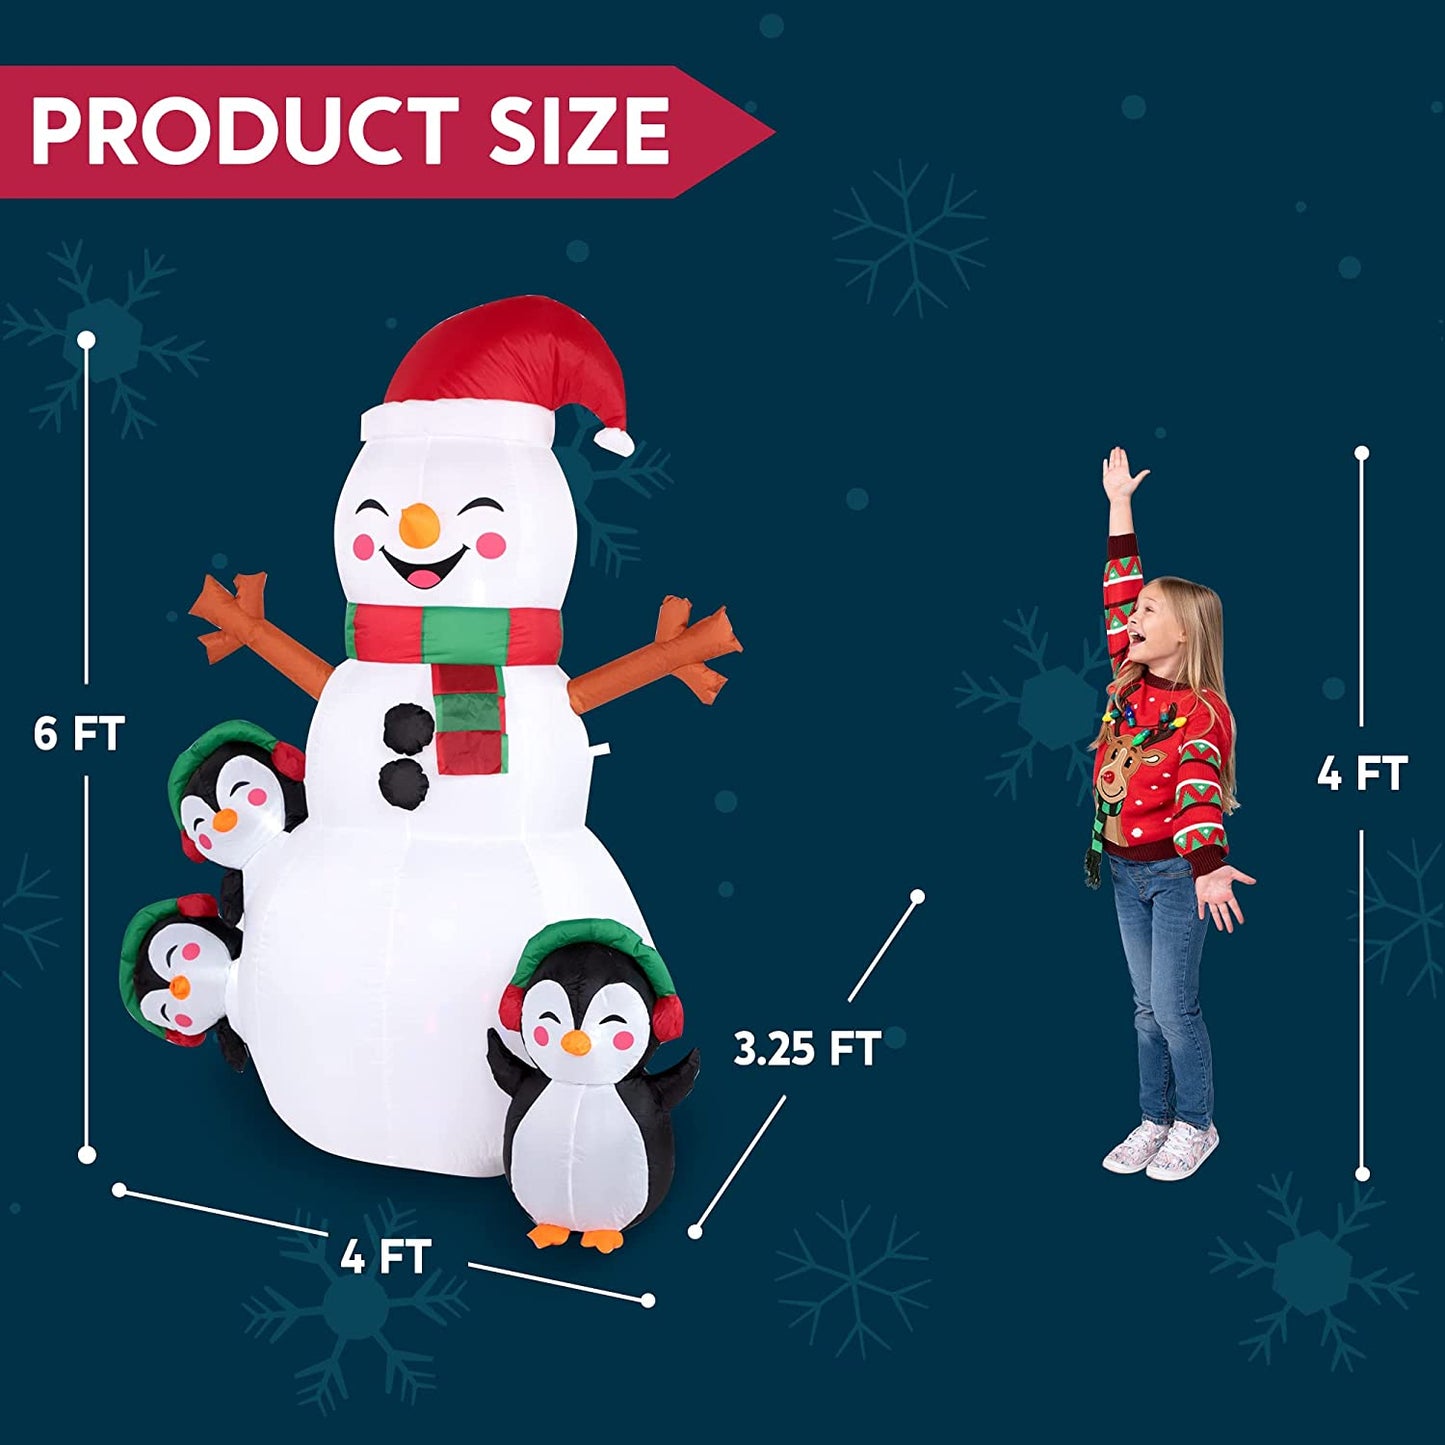 6ft Shinny Snowman Christmas Inflatable